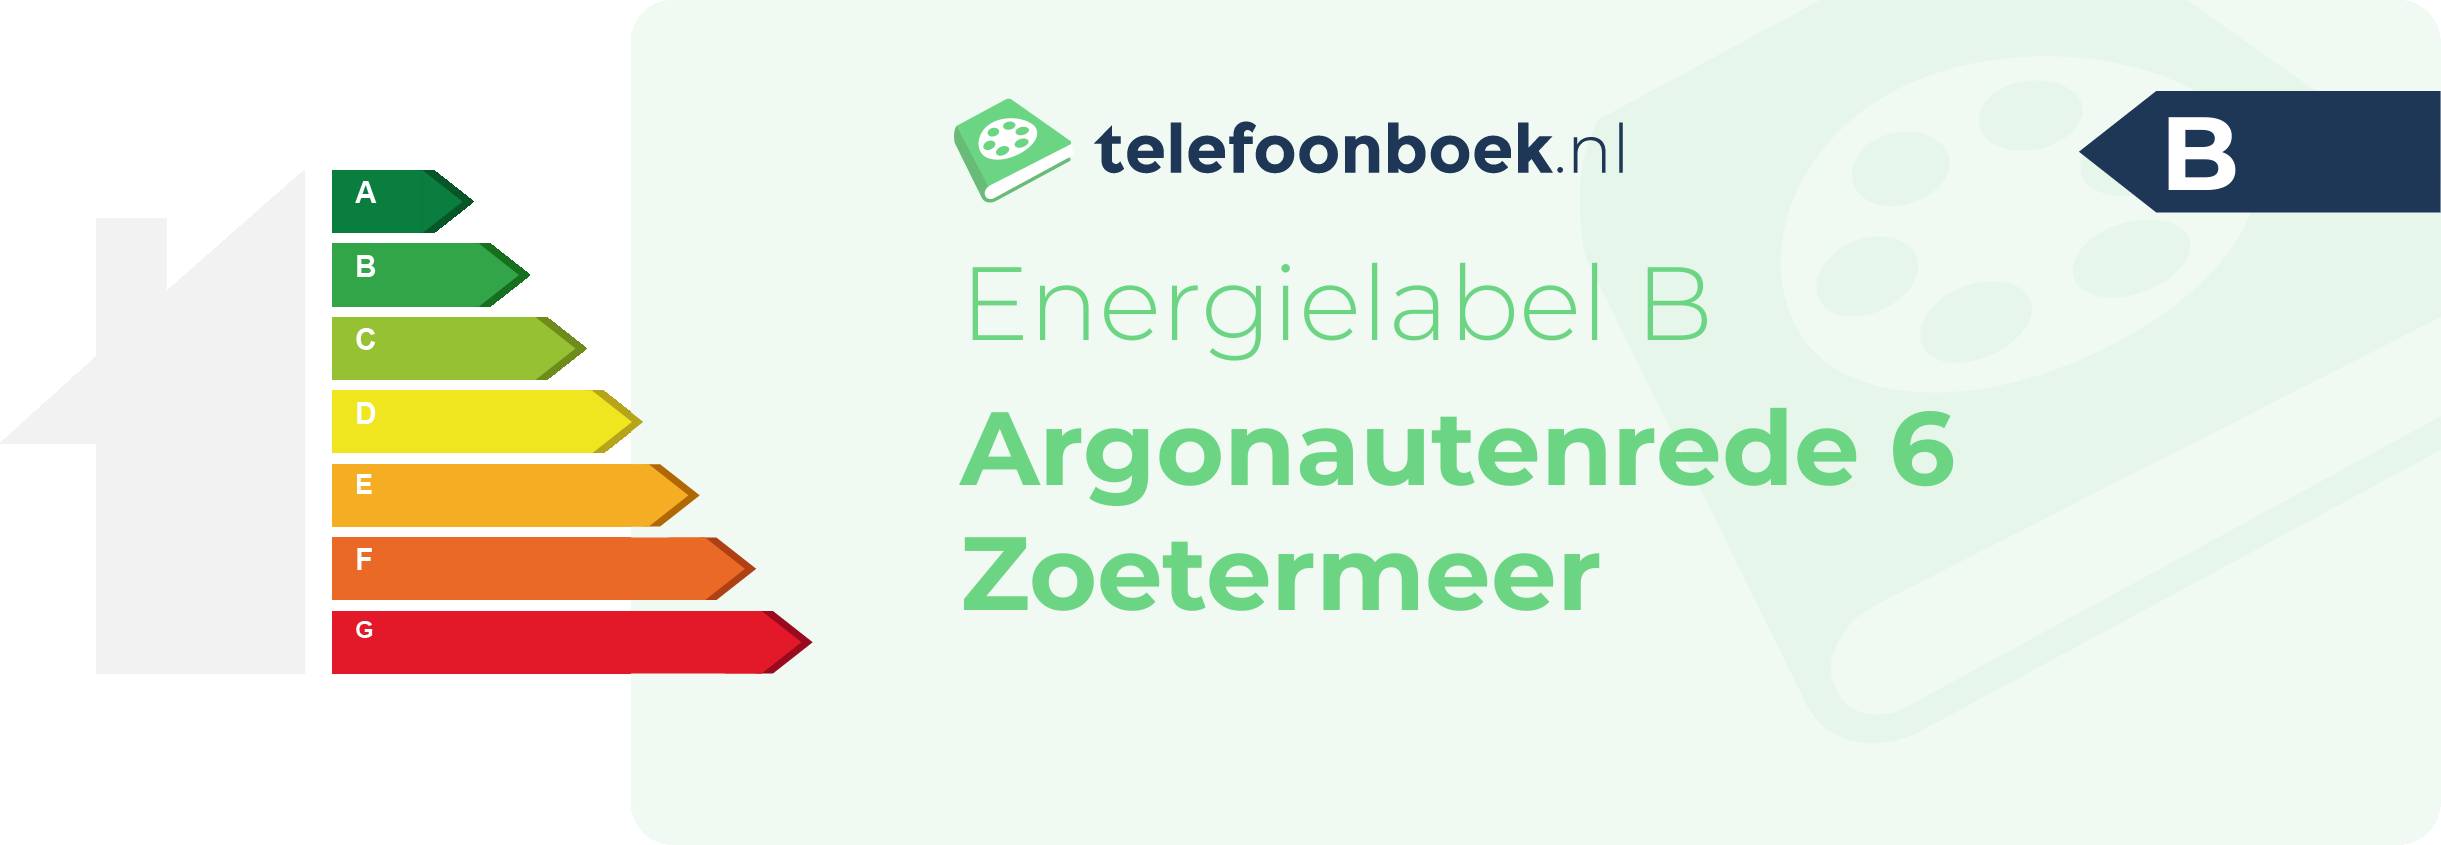 Energielabel Argonautenrede 6 Zoetermeer